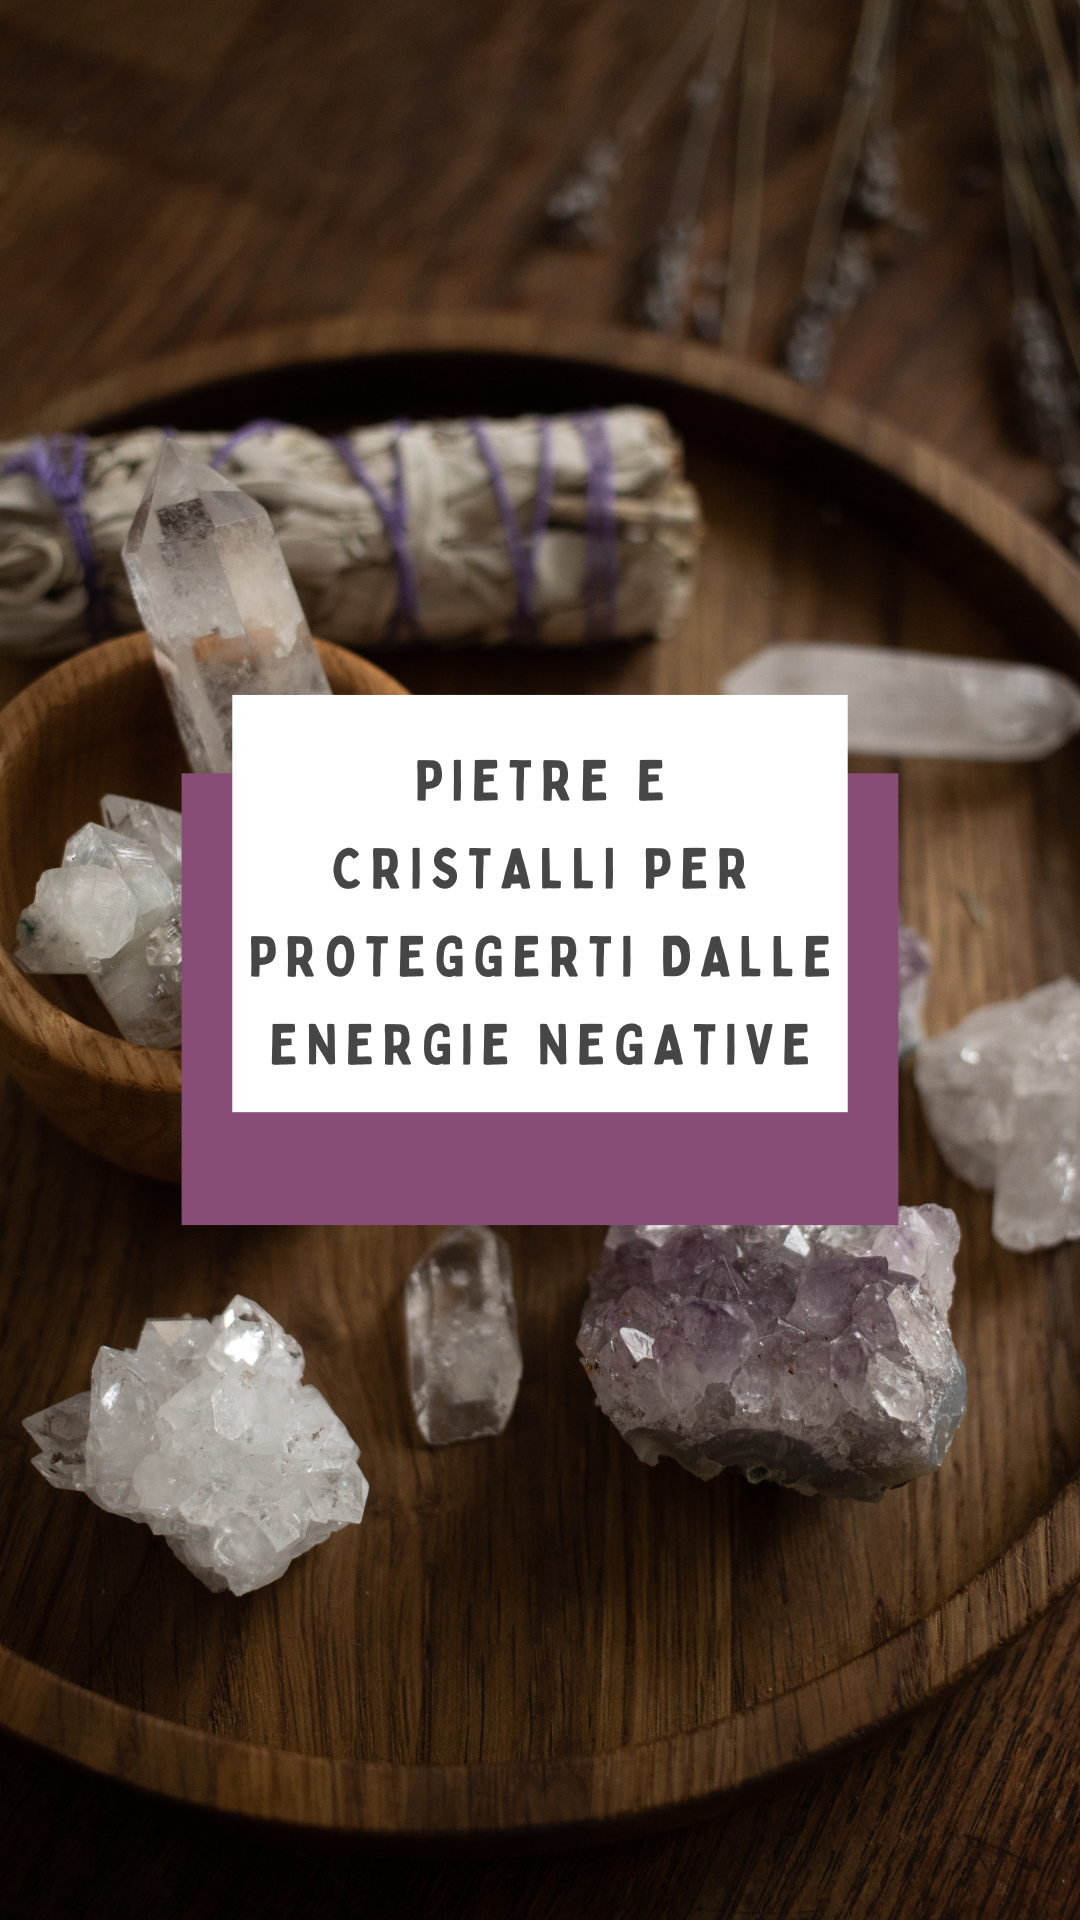 Pietre e cristalli per proteggerti dalle energie negative